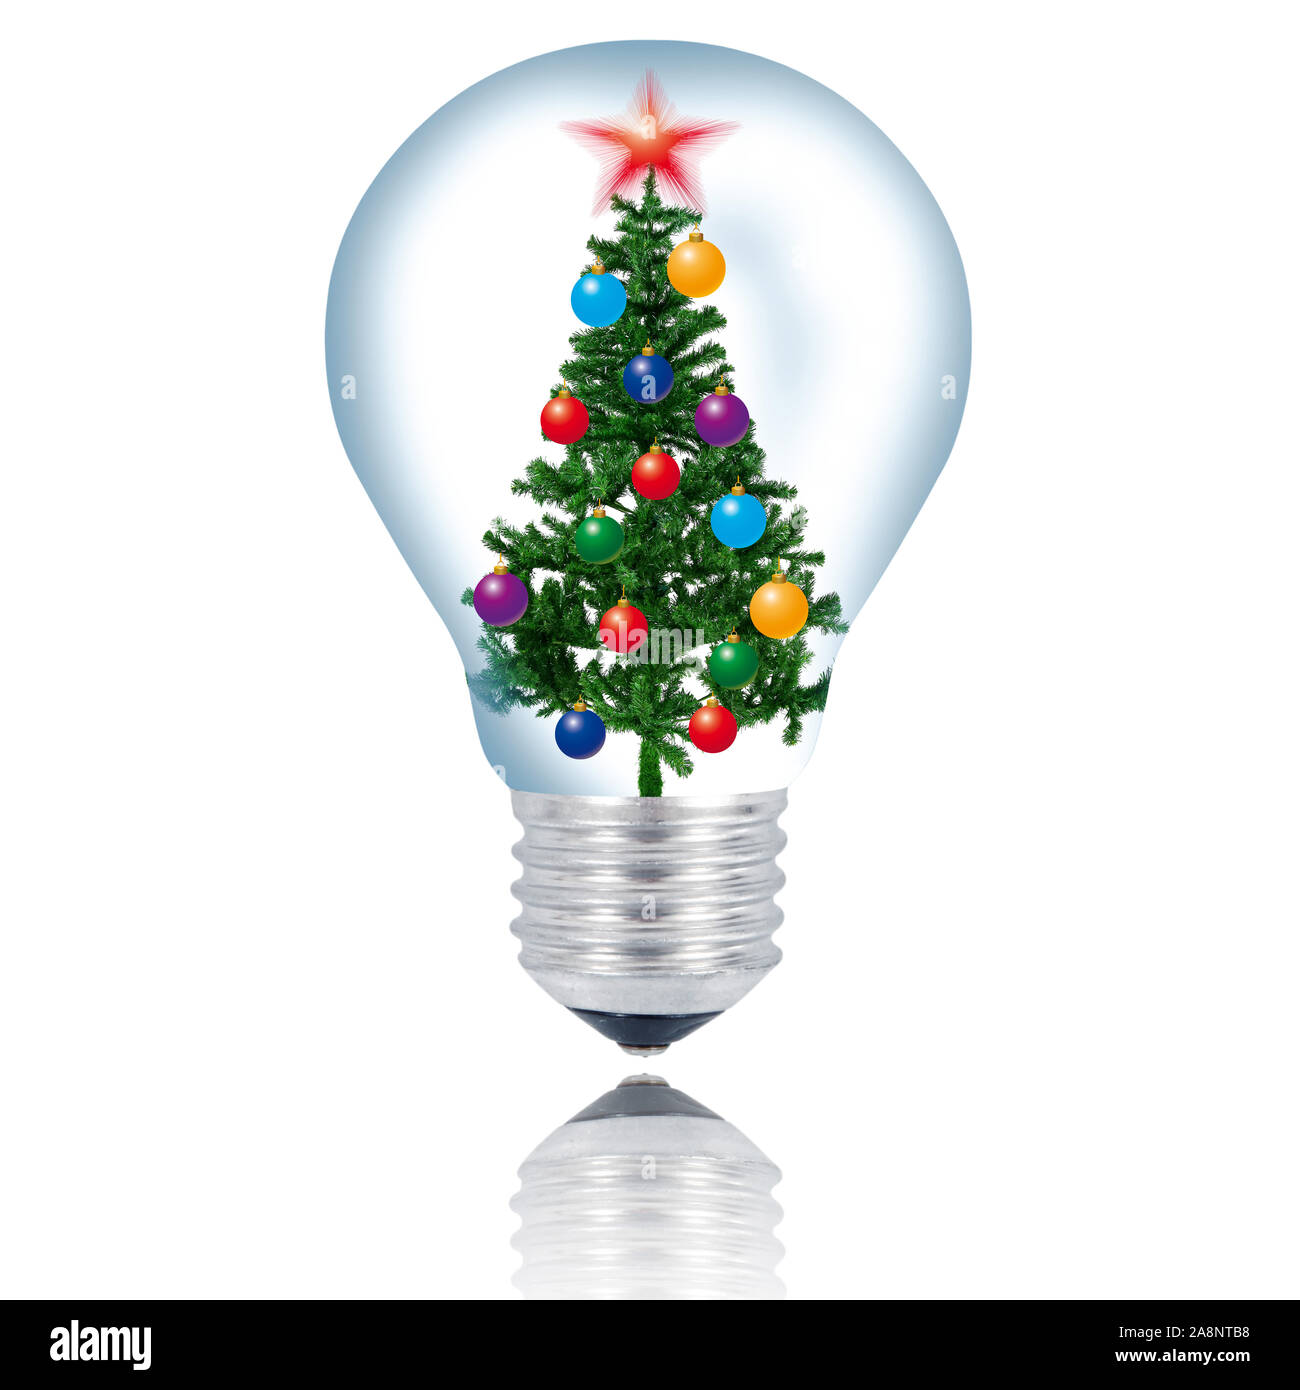 xmas tree light bulb on white background Stock Photo - Alamy